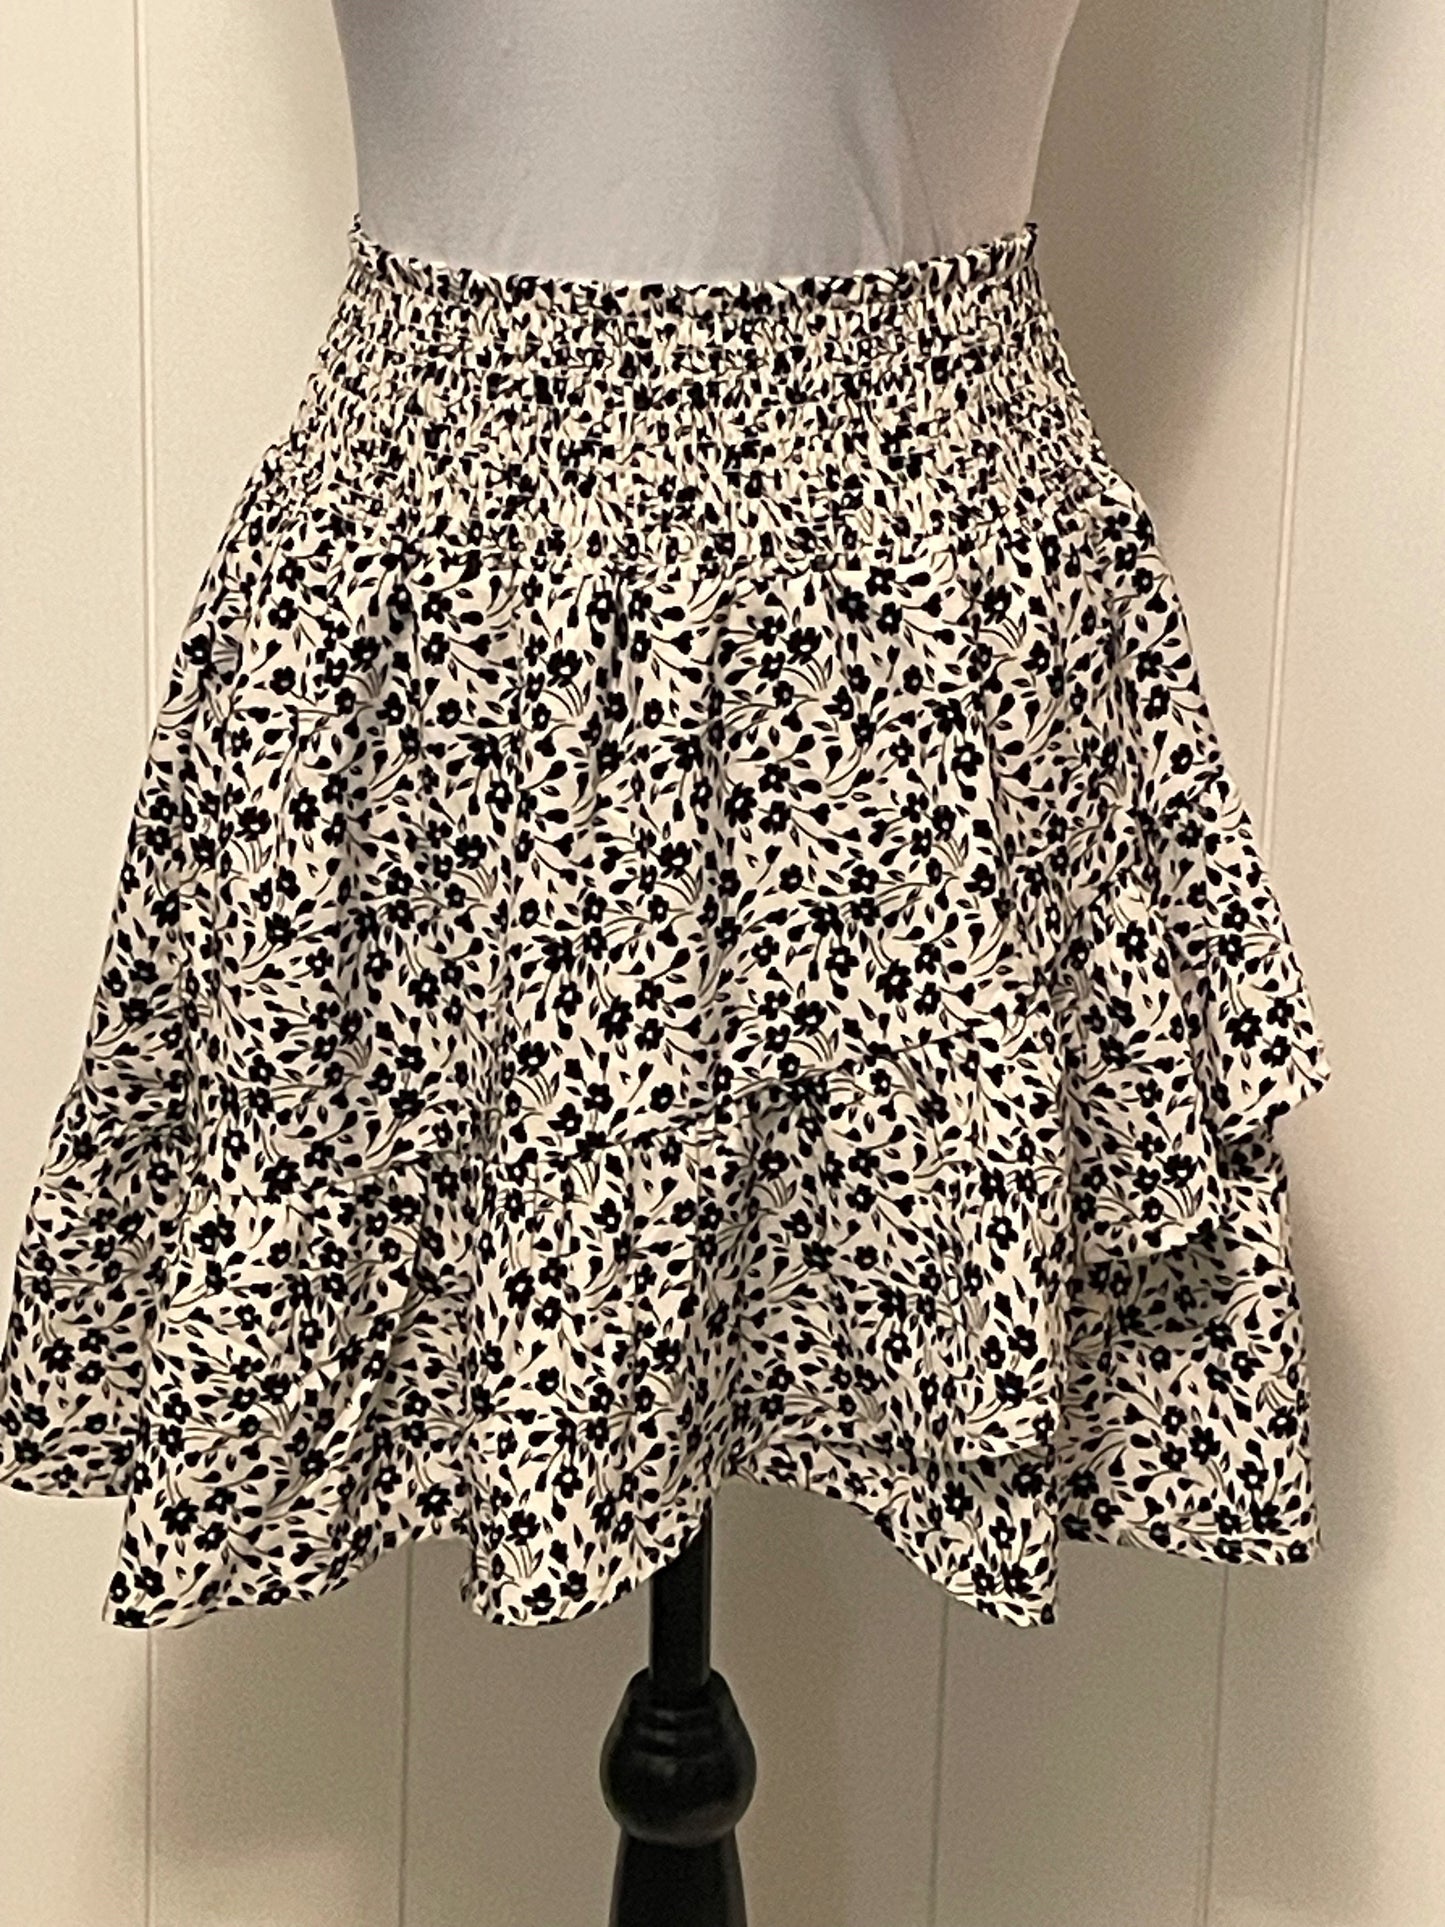 Size Medium - Altar'd State skirt